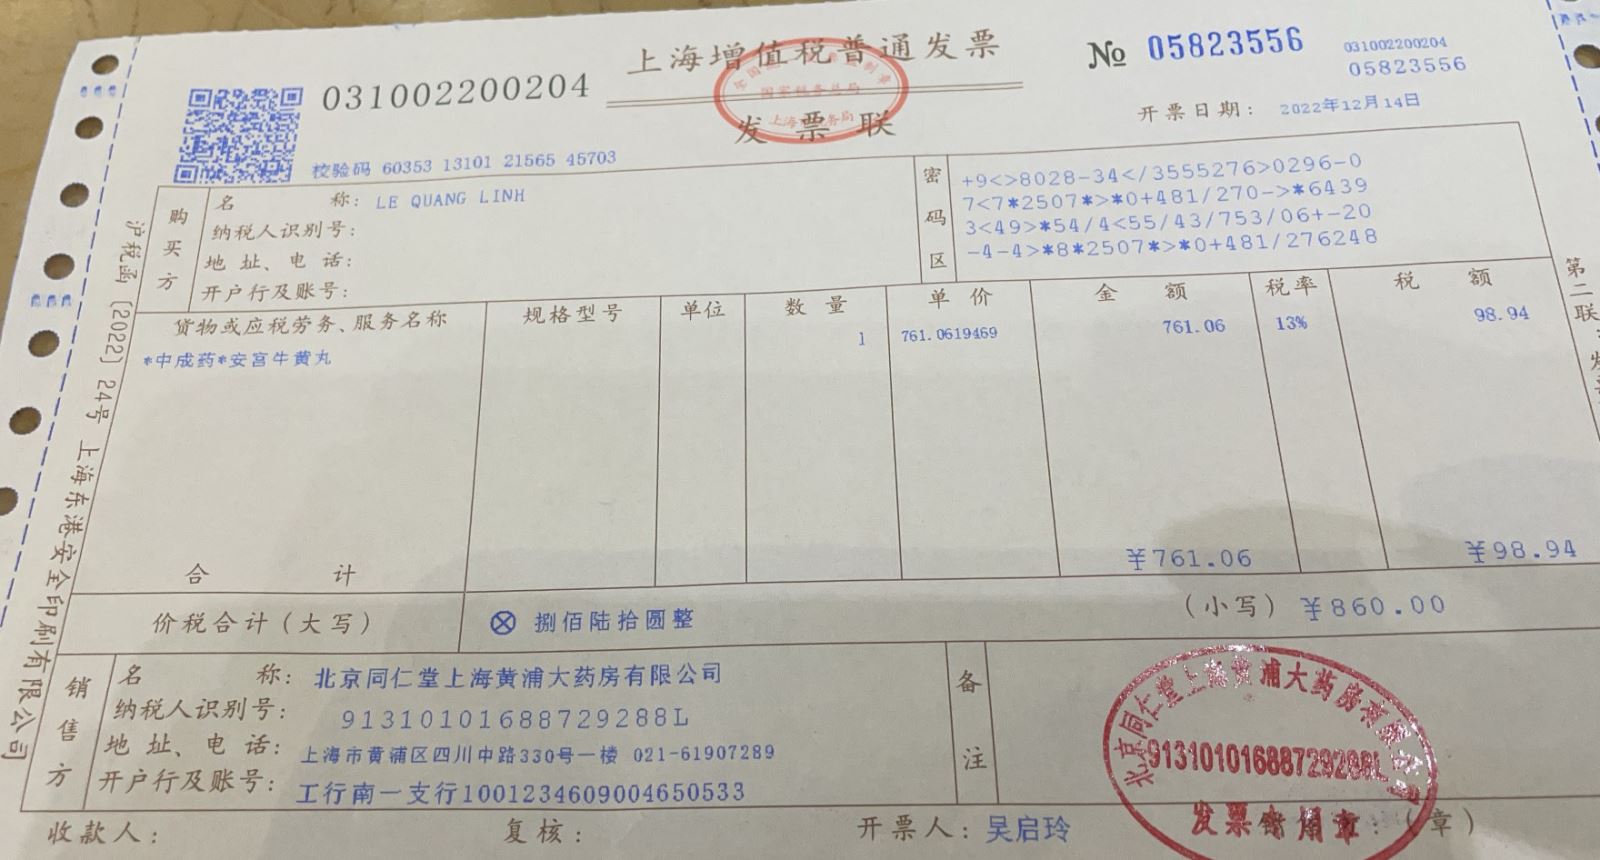 Hóa đơn mang tên Le Quang Linh Vinaplaza khi mua hàng tại Đồng Nhân Đường Bắc Kinh